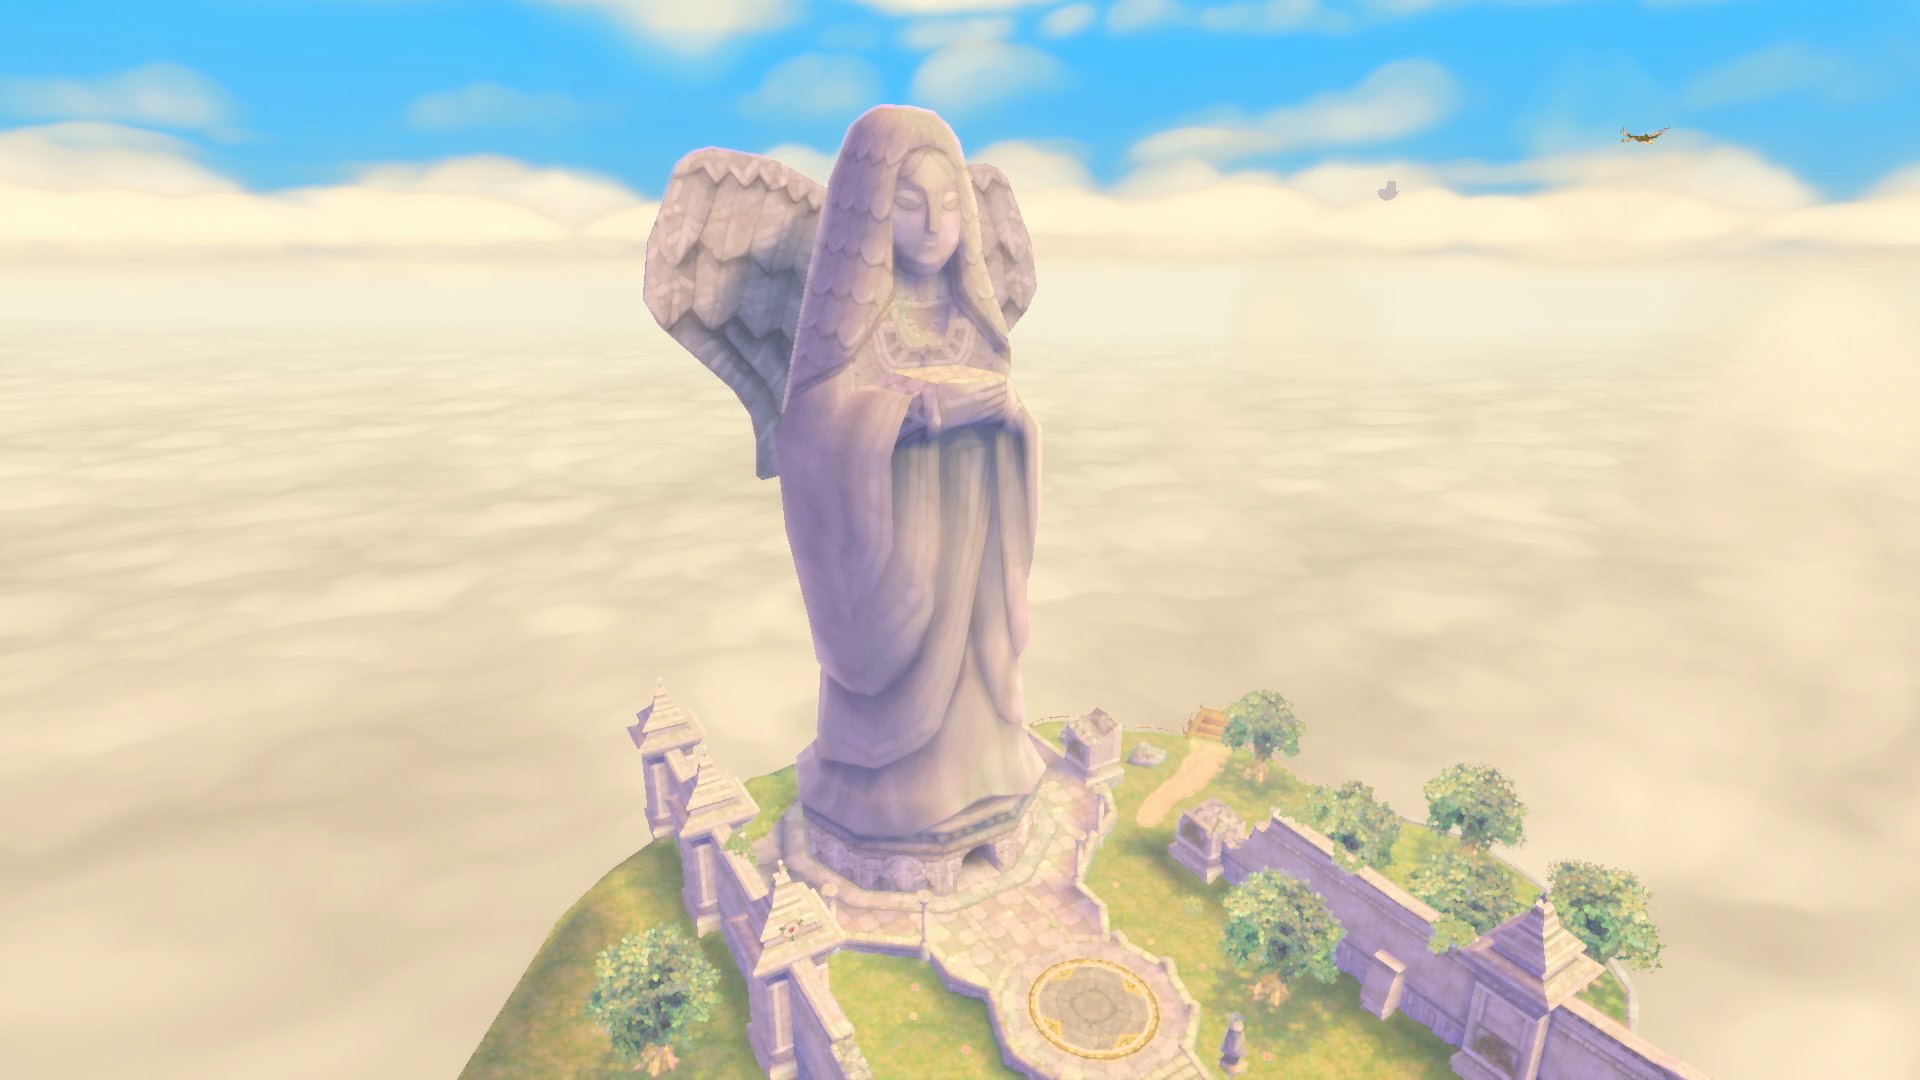 O Xrhsths ゼルダの伝説 Sto Twitter 女神像 天空に浮かぶ島 スカイロフト には 大きな女神像が立っています 島のどこからでも見えるランドマークなので スカイロフトで自分の居場所が分からなくなったときは 女神像を探してみると良いですよ